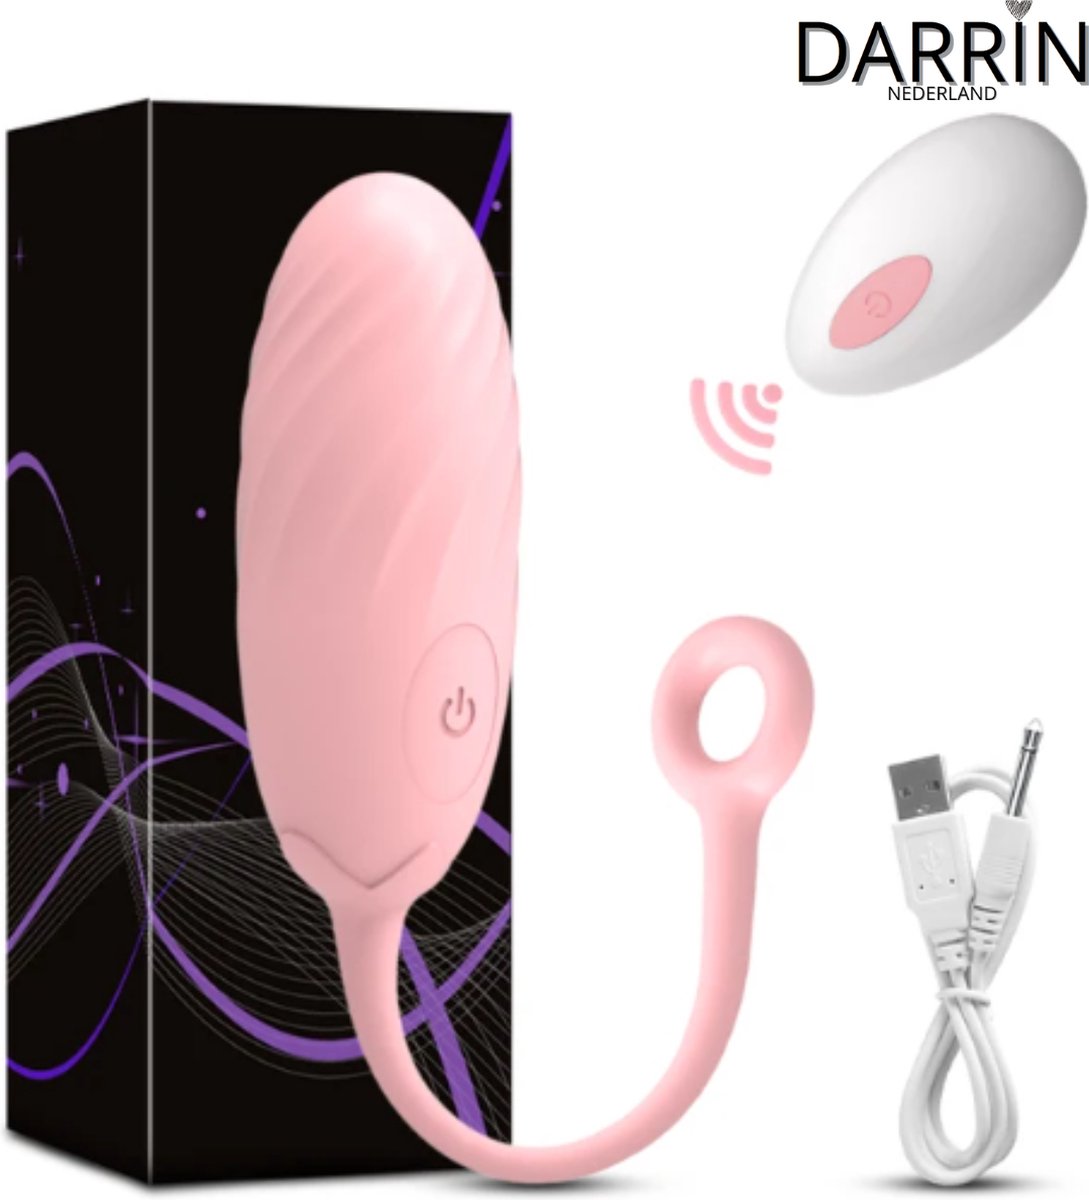 Draagbare Mini Vibrator Ei voor Vrouwen (licht Rose)- Clitorale Stimulatie - 10 Levels - G-spot - Vibrator voor Vrouwen - Seksspeeltje voor Koppels - Draadloze Afstandsbediening - Volwassen Seksspeeltje en Stimulator - Vibrerende Ei